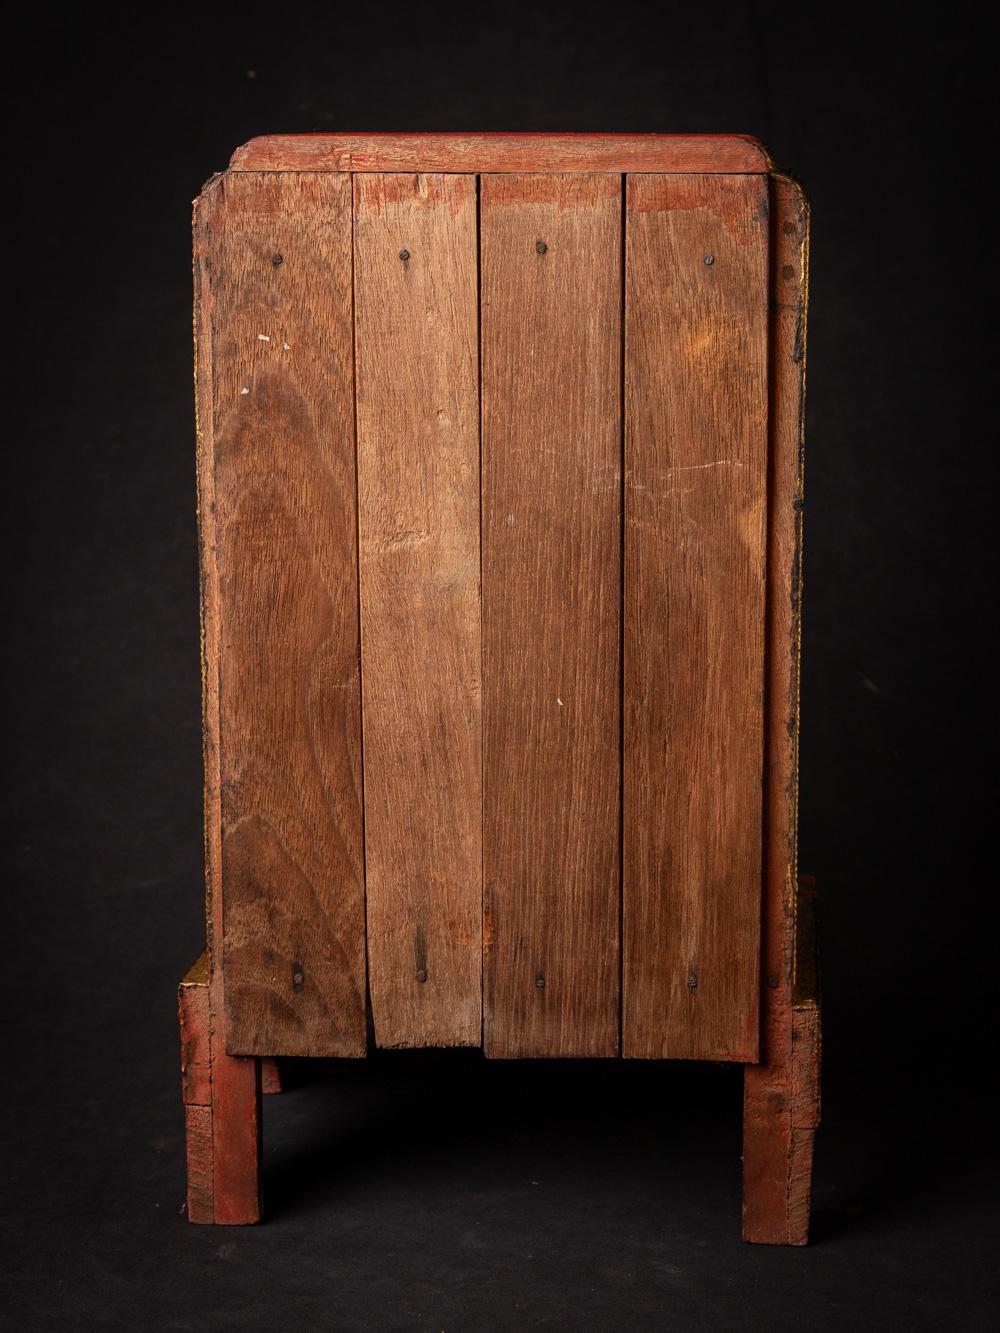 Dieser antike birmanische Holztempel aus dem 19. Jahrhundert ist ein beeindruckendes Zeugnis des reichen geistigen und künstlerischen Erbes Birmas. Mit einer Höhe von 43,5 cm, einer Breite von 25,3 cm und einer Tiefe von 21 cm strahlt das aus Holz